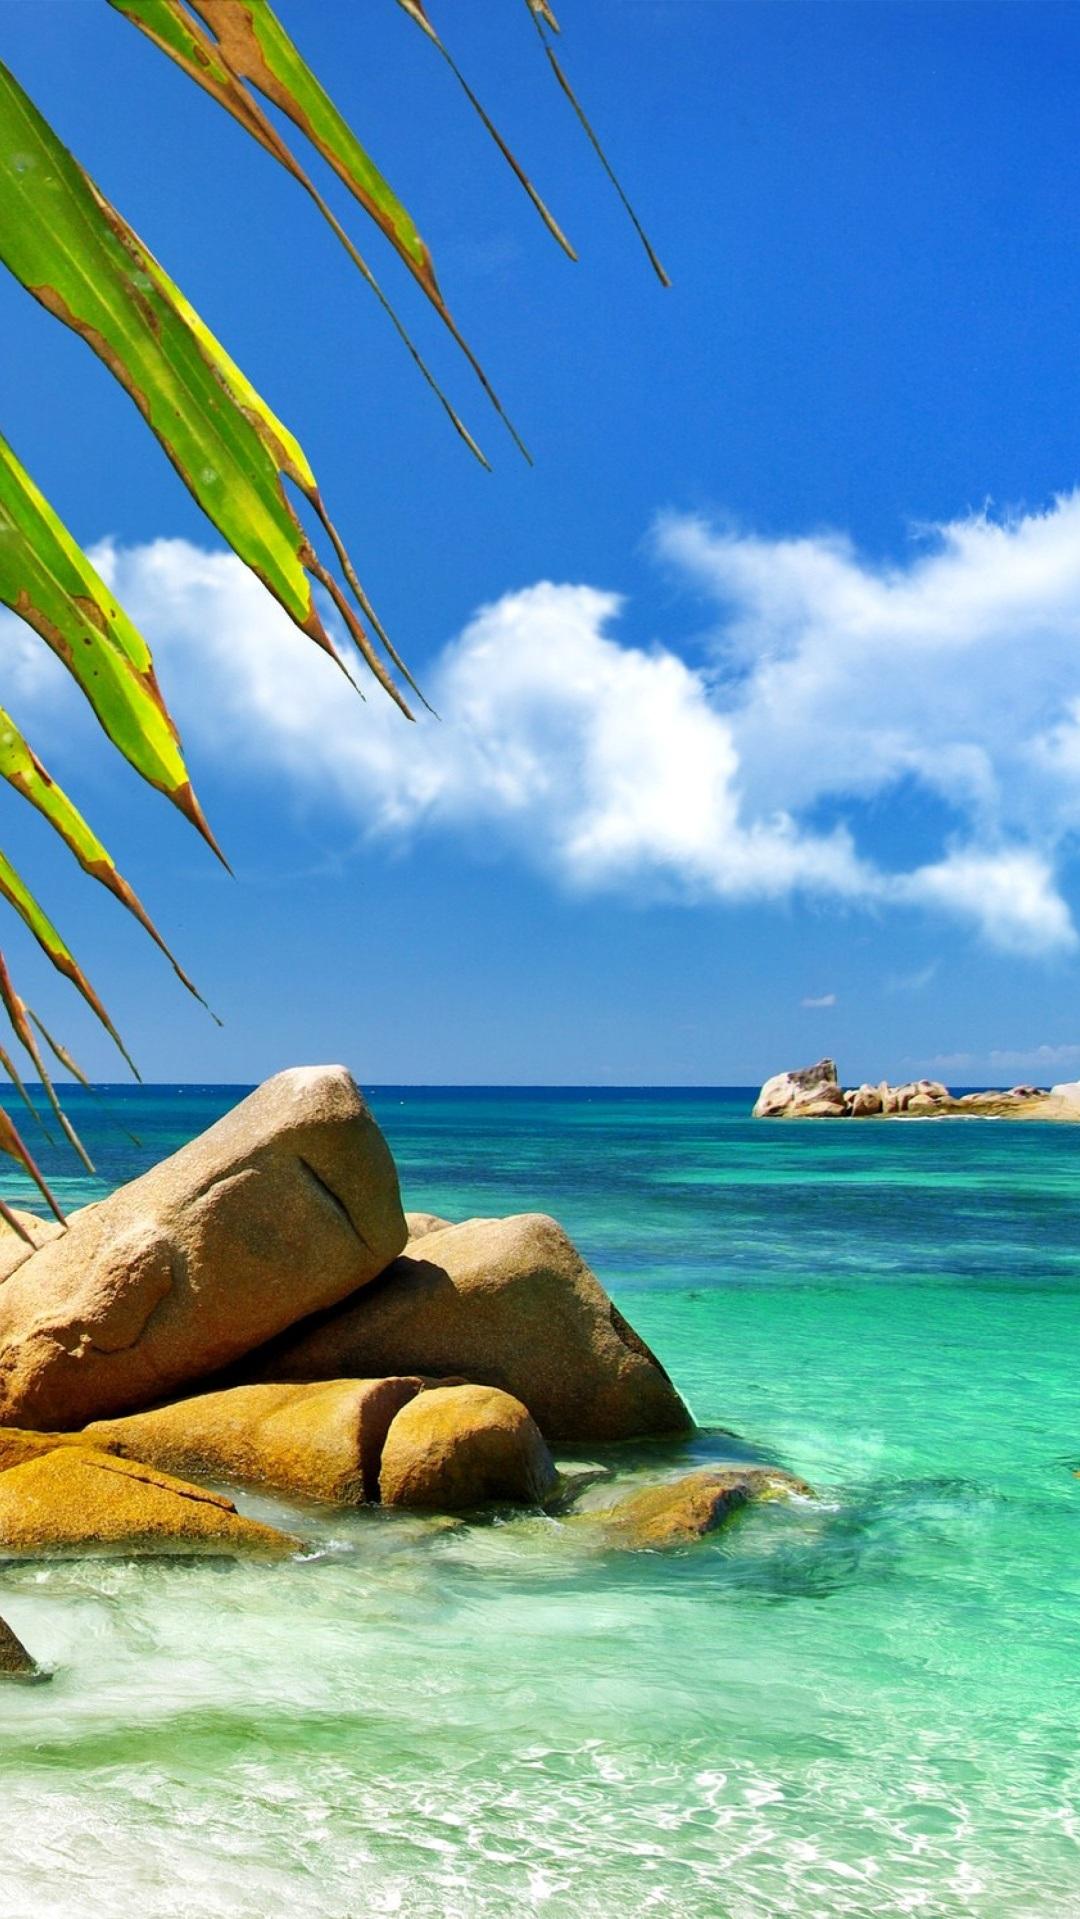 Aruba Luxury Calienteel Y Beach Islands iPhone Fondos De Pantalla